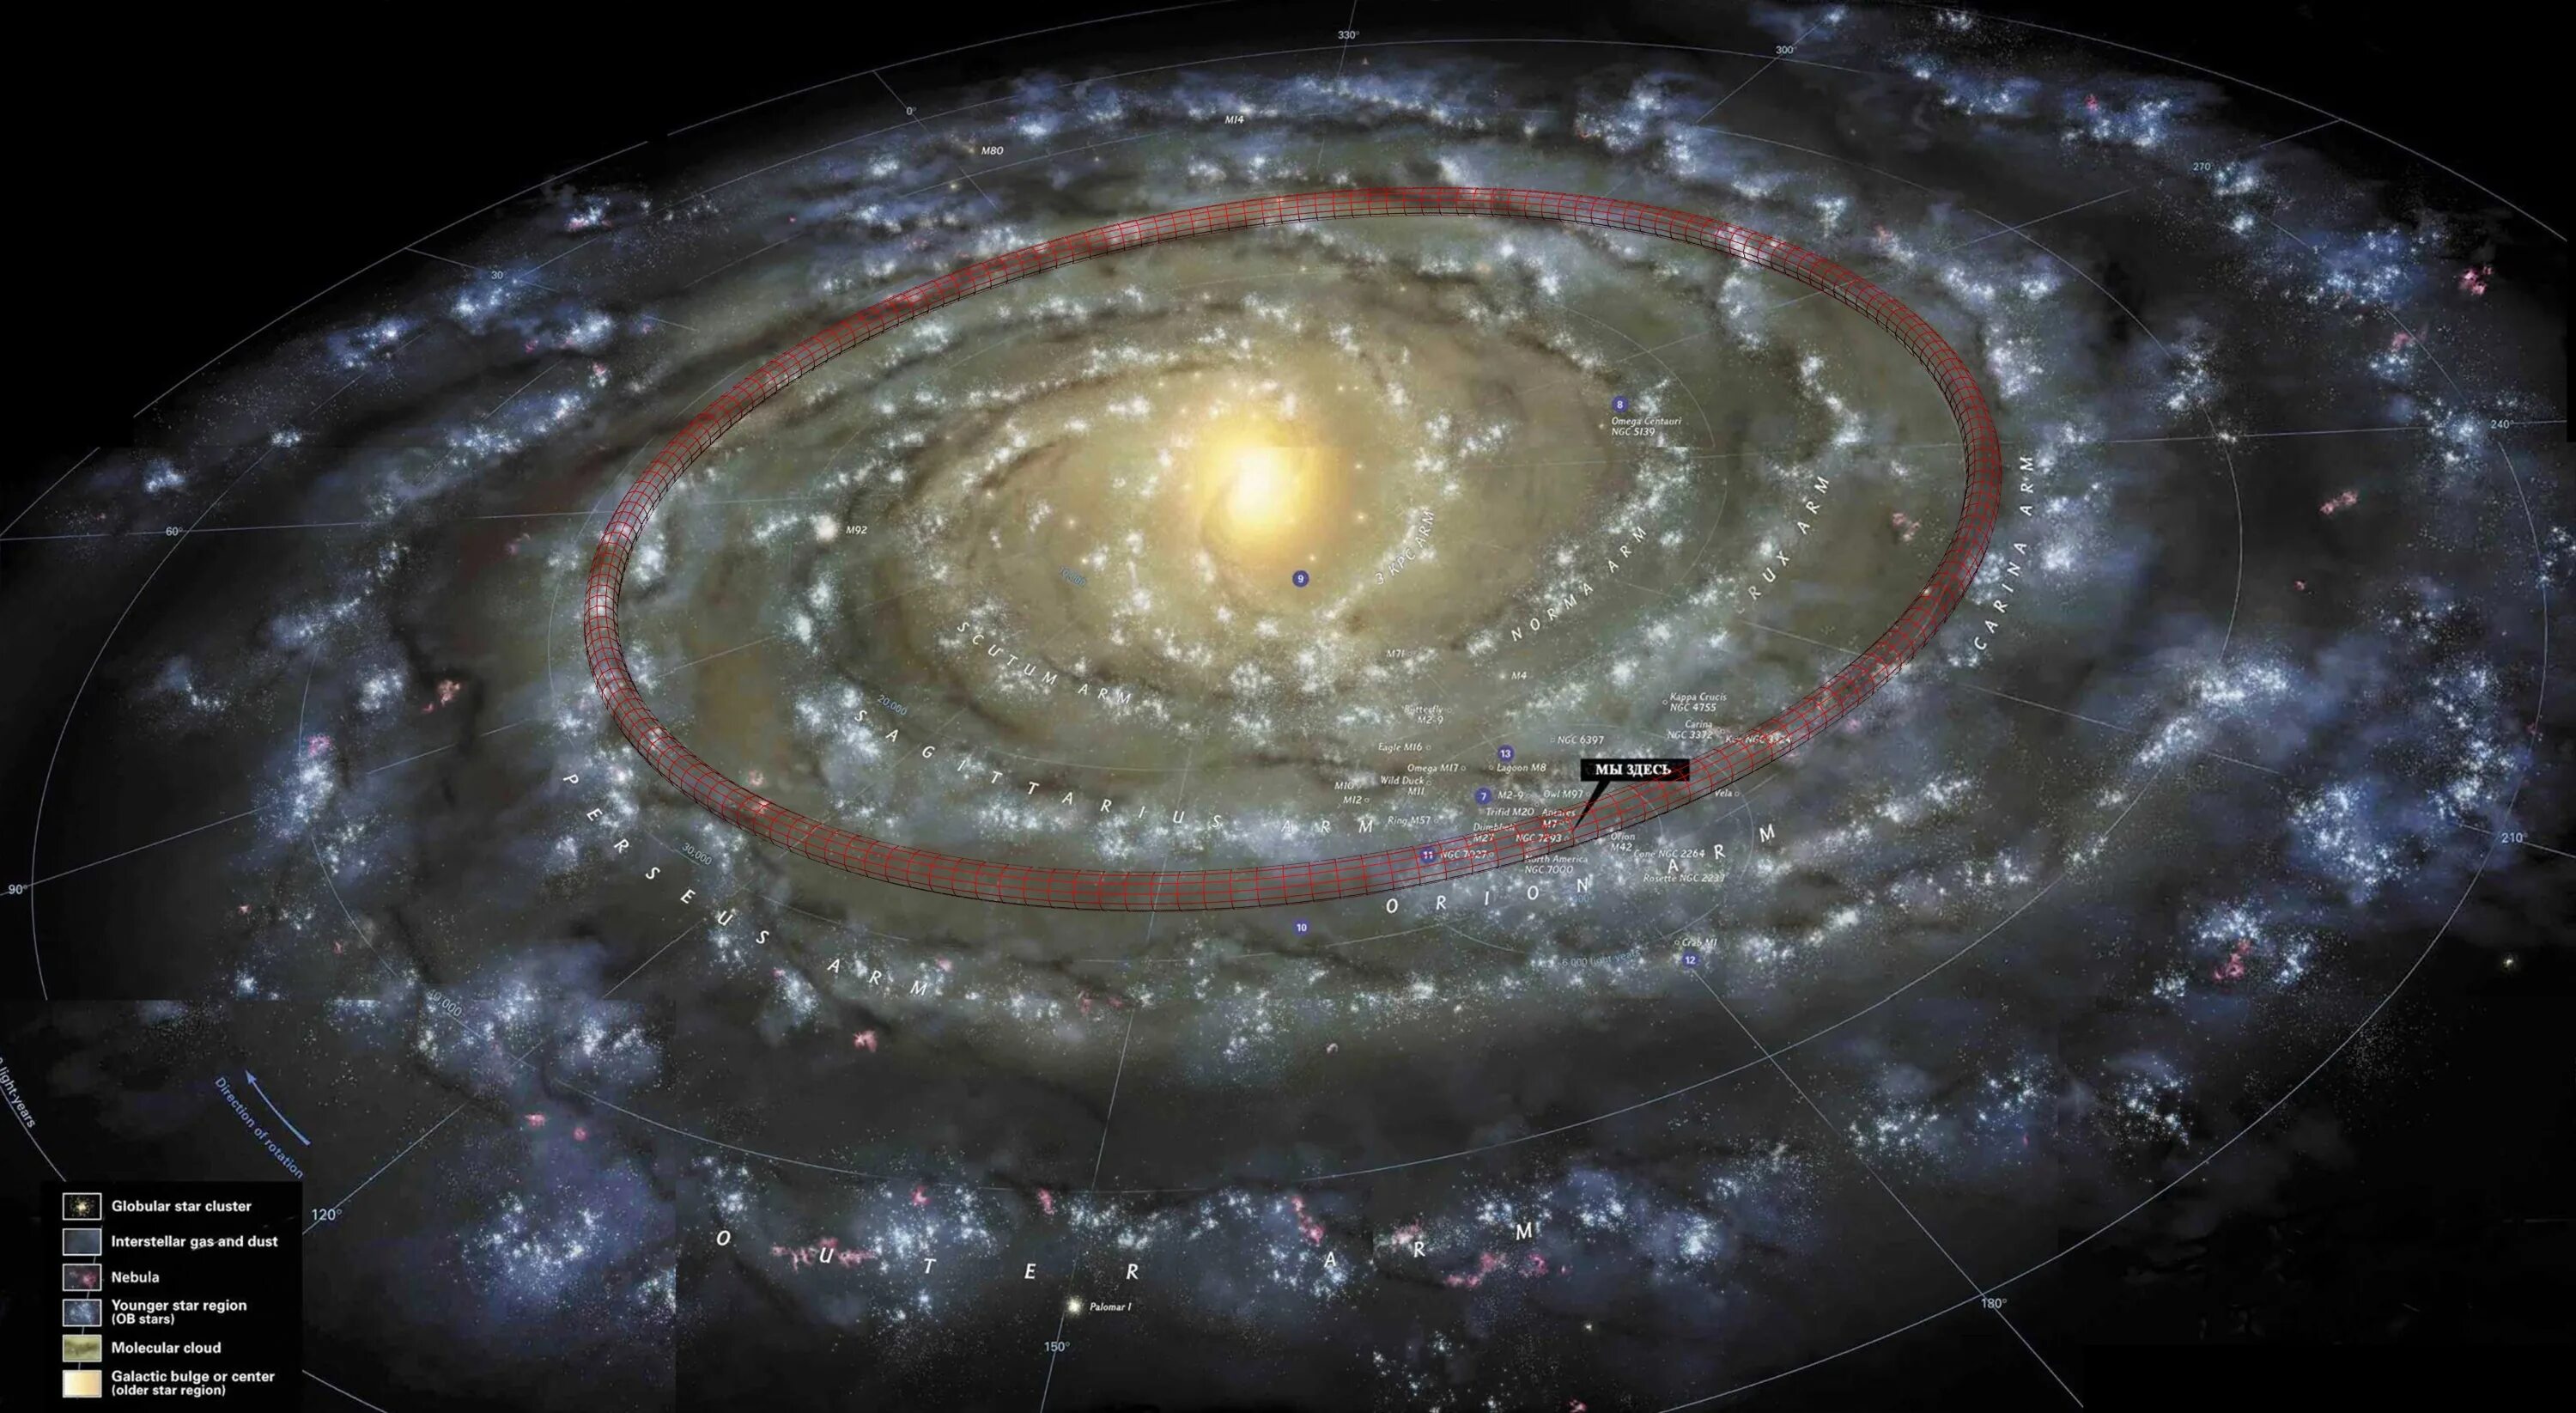 1 му земли. Солнечная система на карте Галактики Млечный путь. Звездная карта Галактики Млечный путь. Галактика Млечный путь планеты солнечной системы.